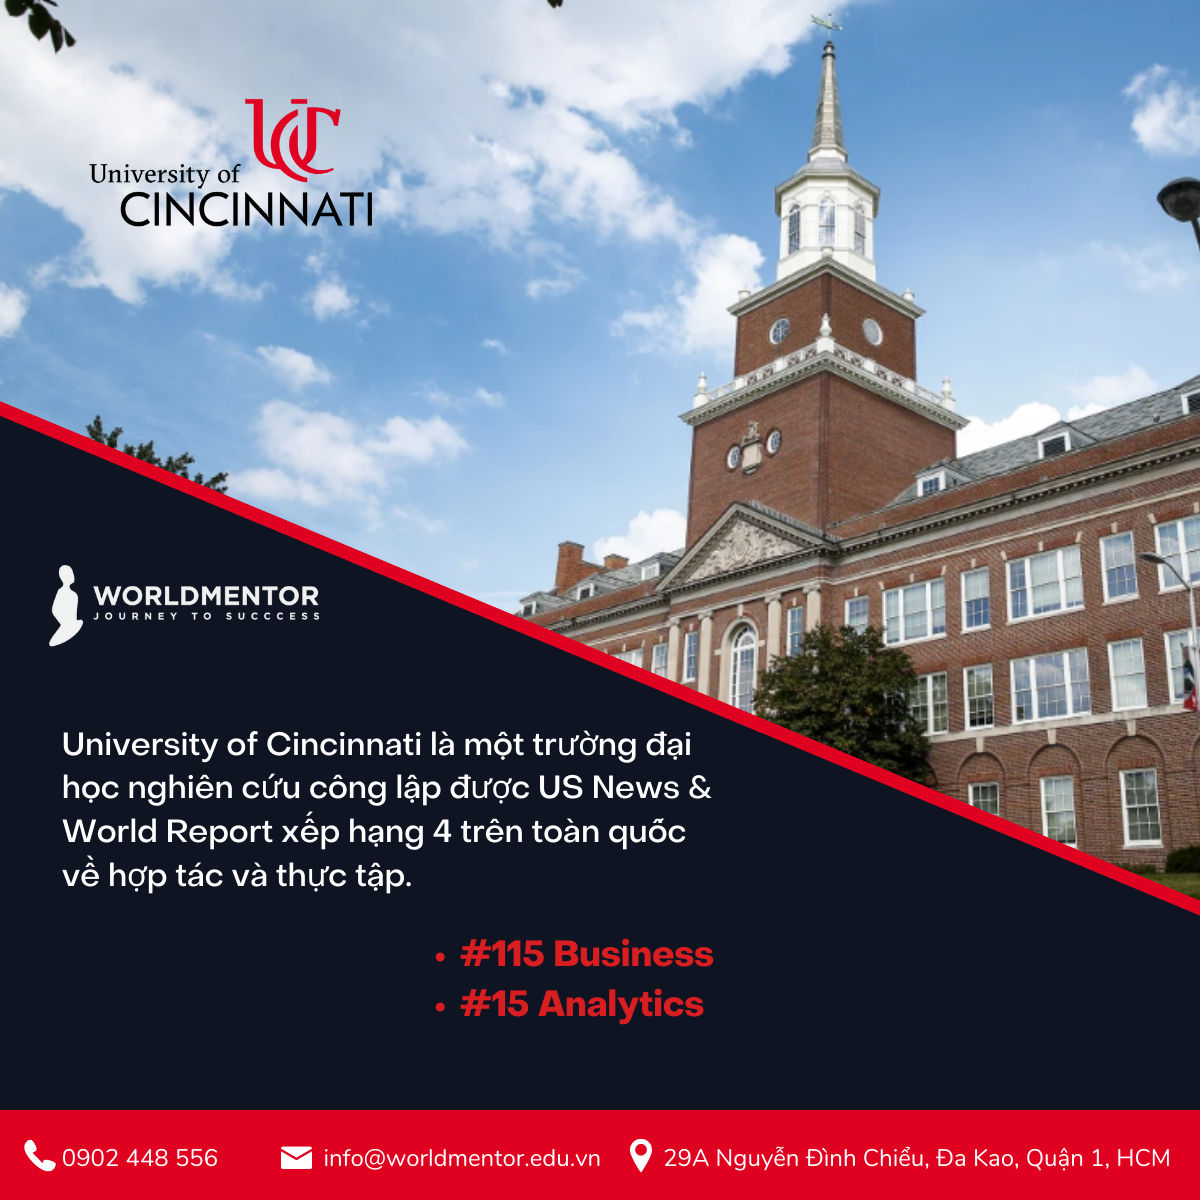 du học Mỹ ngành Kinh doanh tại University of Cincinnati